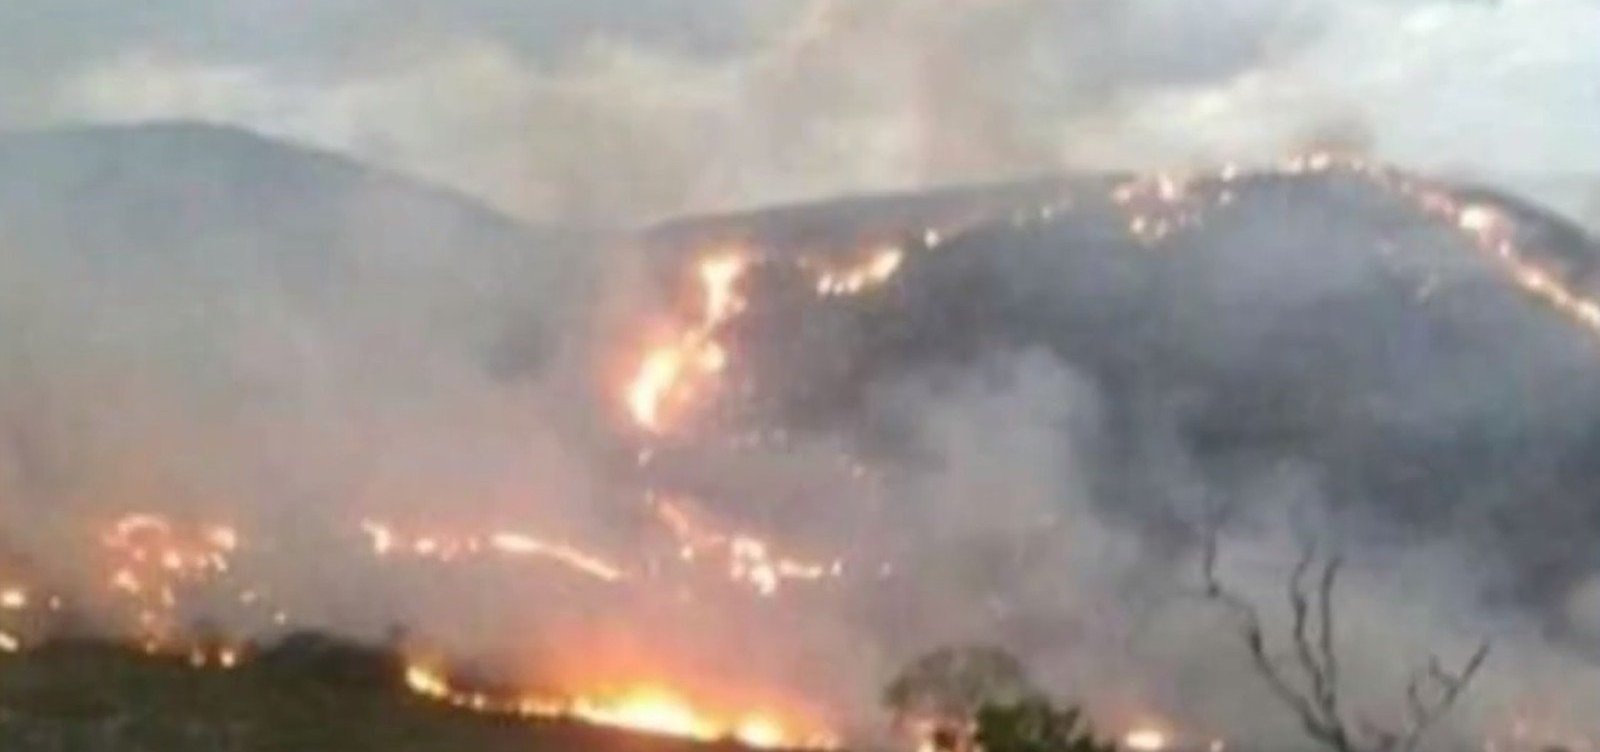 Incêndio destrói área de 540 hectares em Rio de Contas